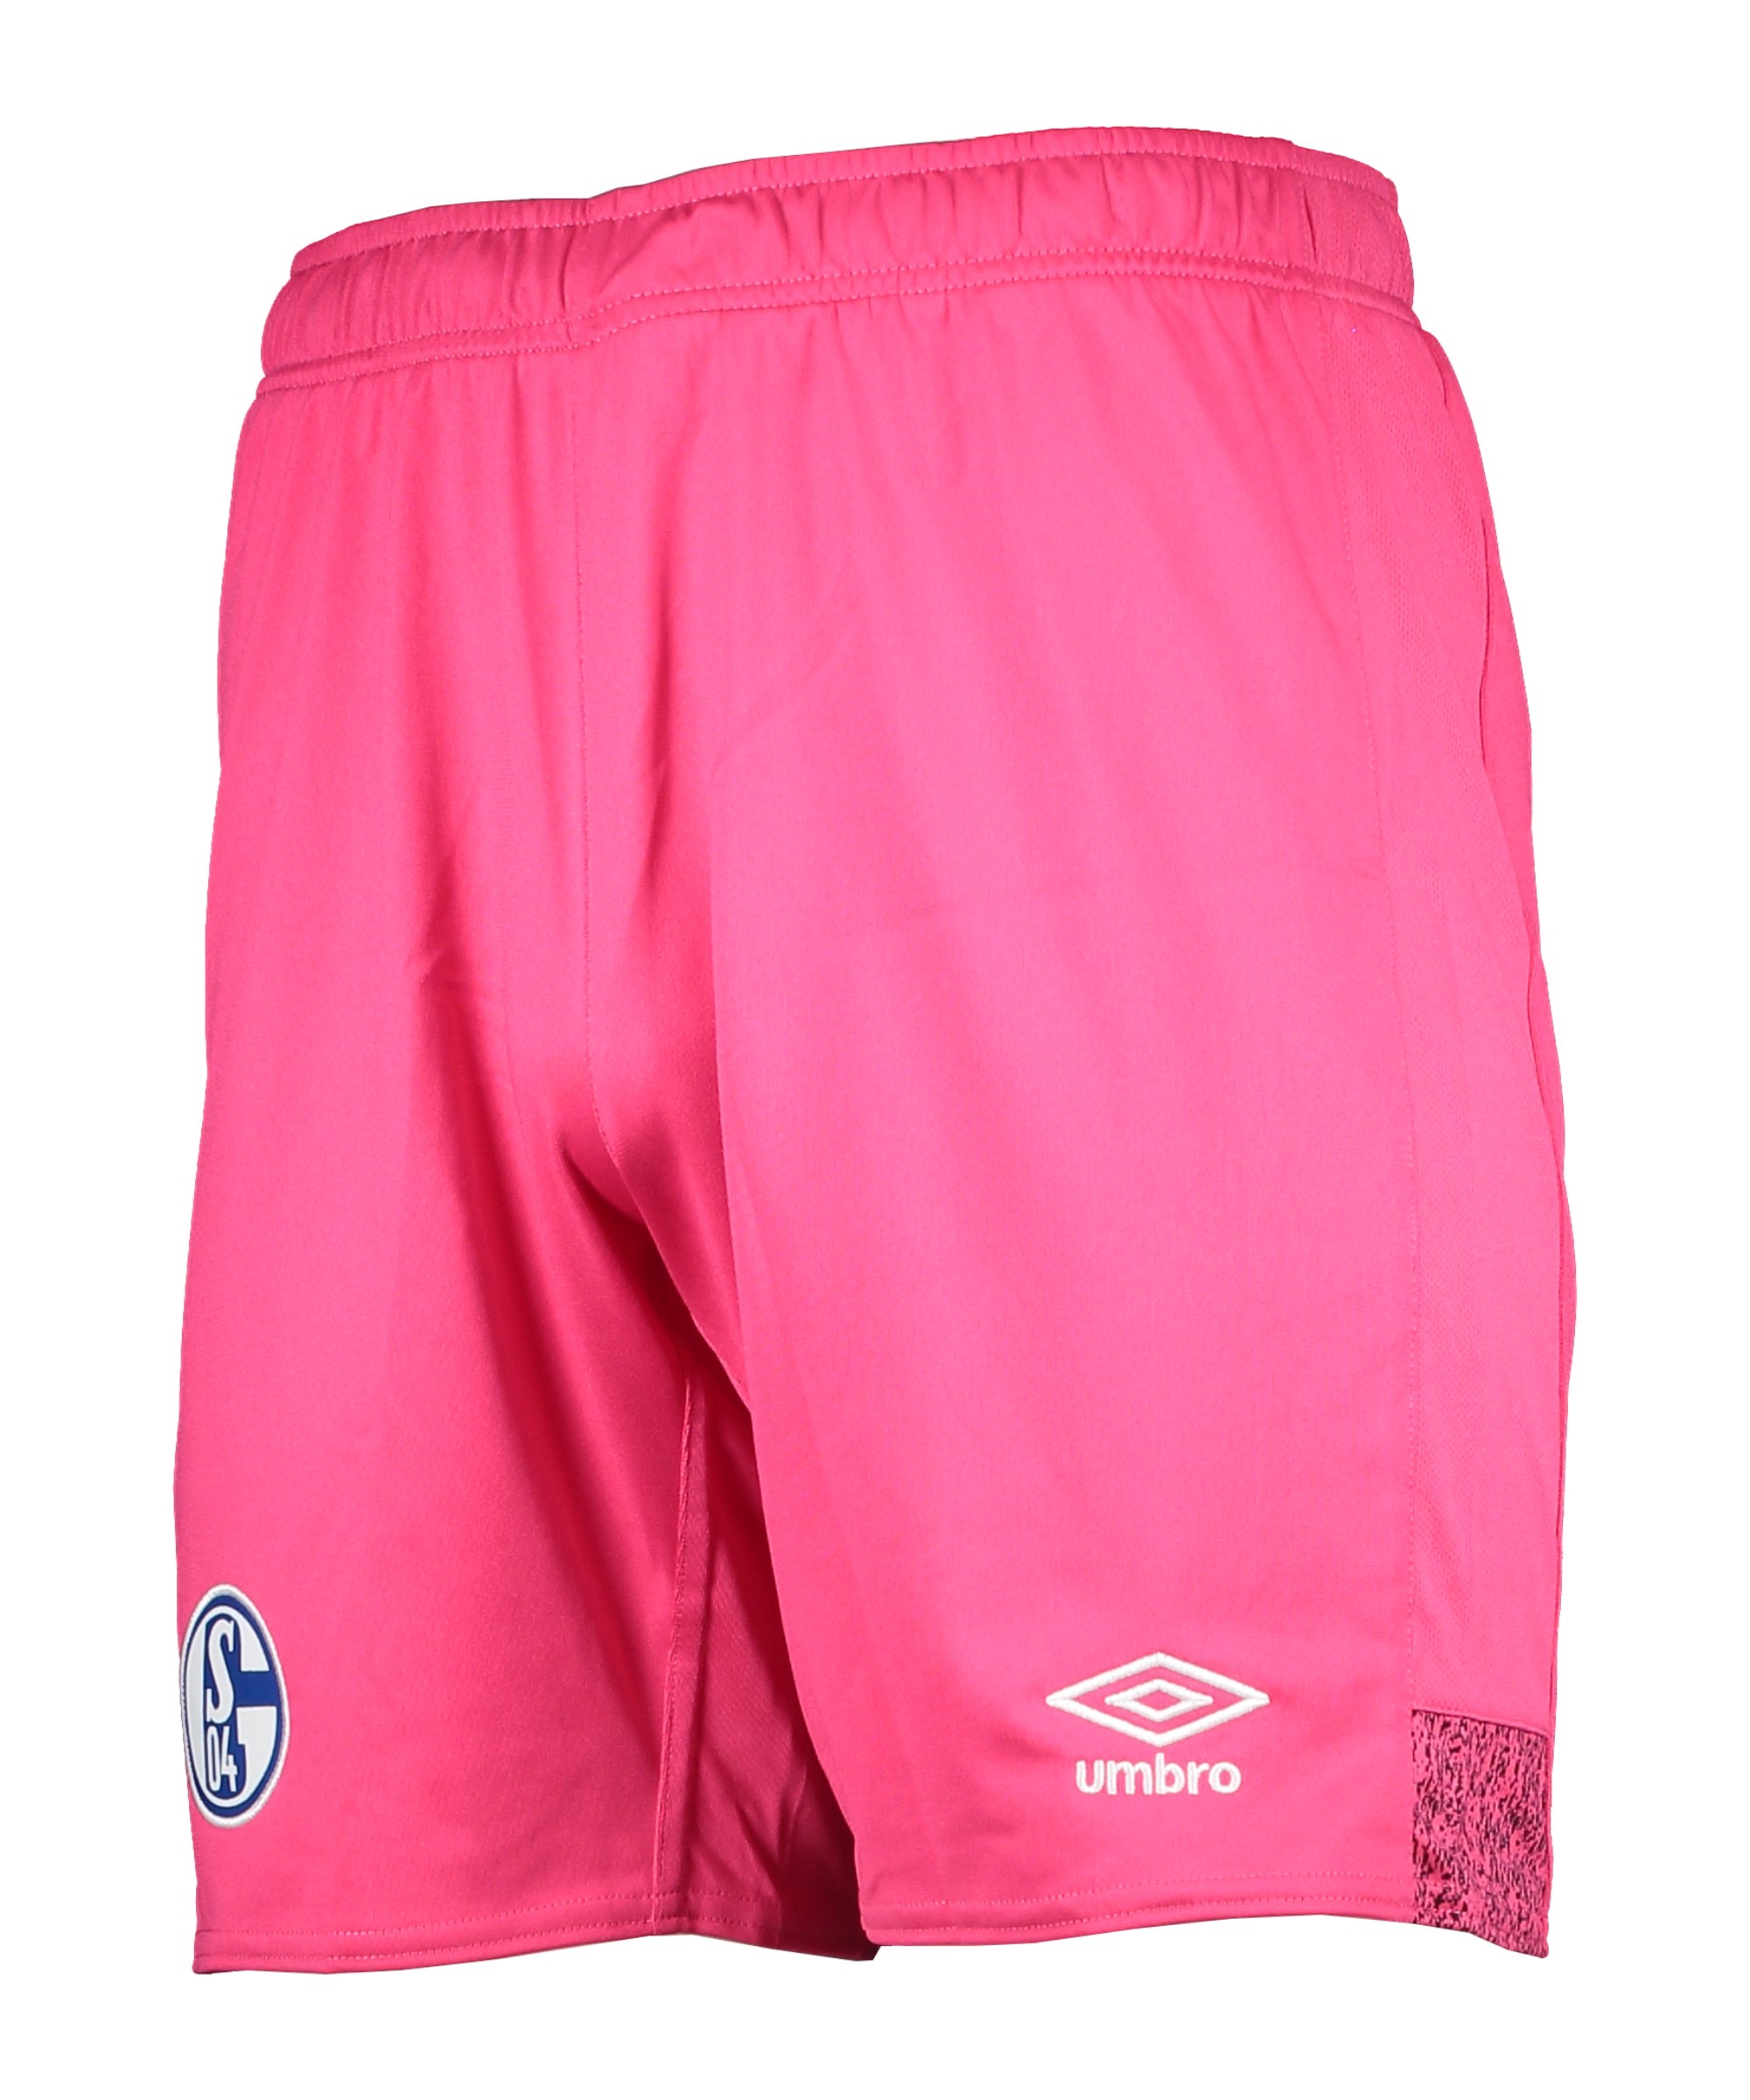 Umbro FC Schalke 04 Torwart Short Home 2021/2022 - pink